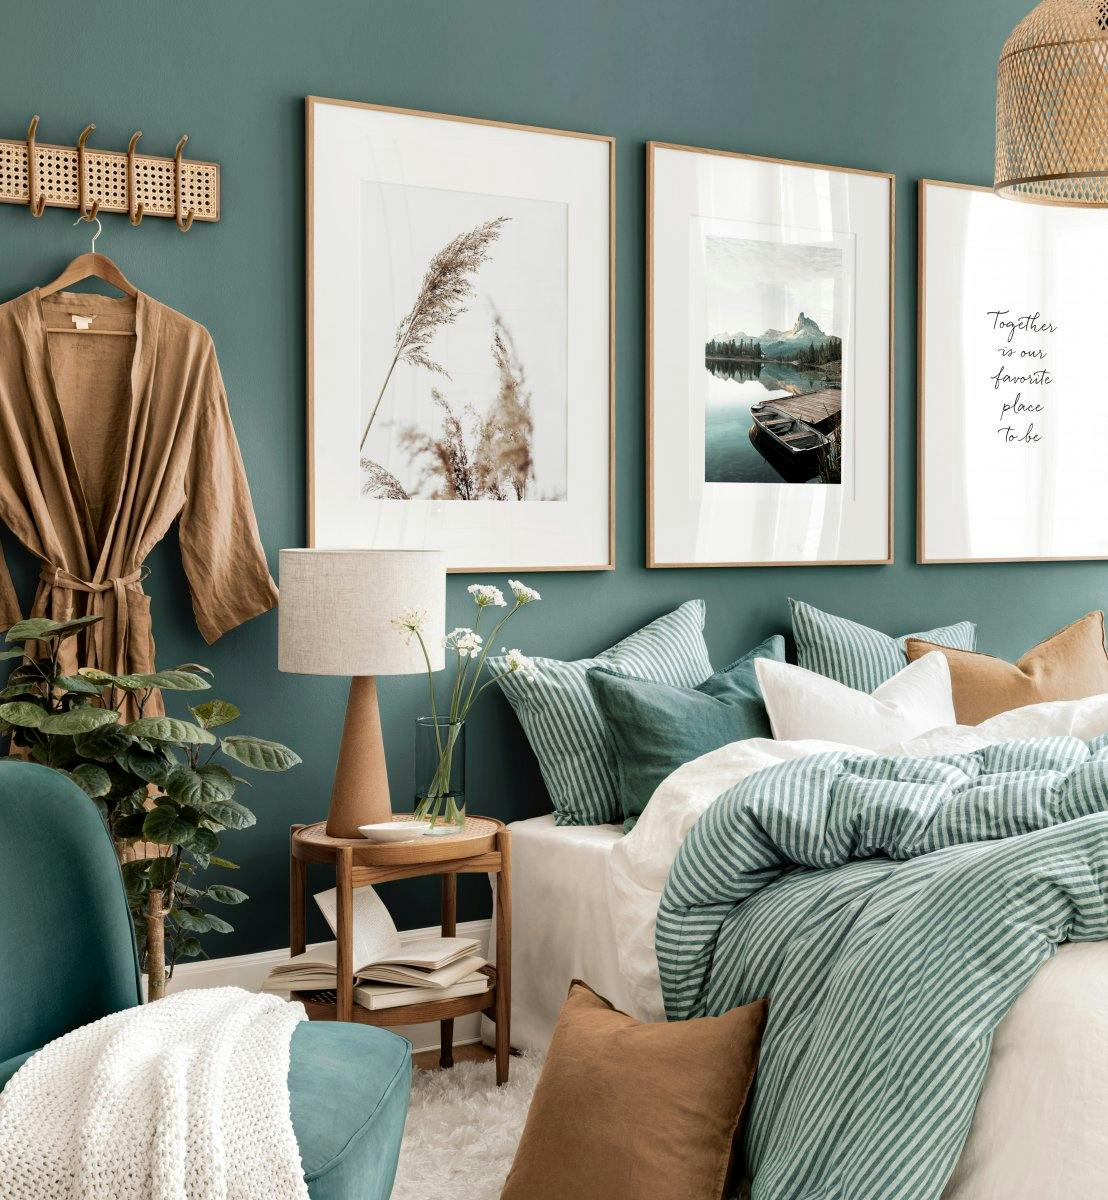 自然と調和 ナチュラルスタイル ギャラリーウォール ウォールデコ ベッドルーム おしゃれな部屋 緑ベース 寝室 ポスター